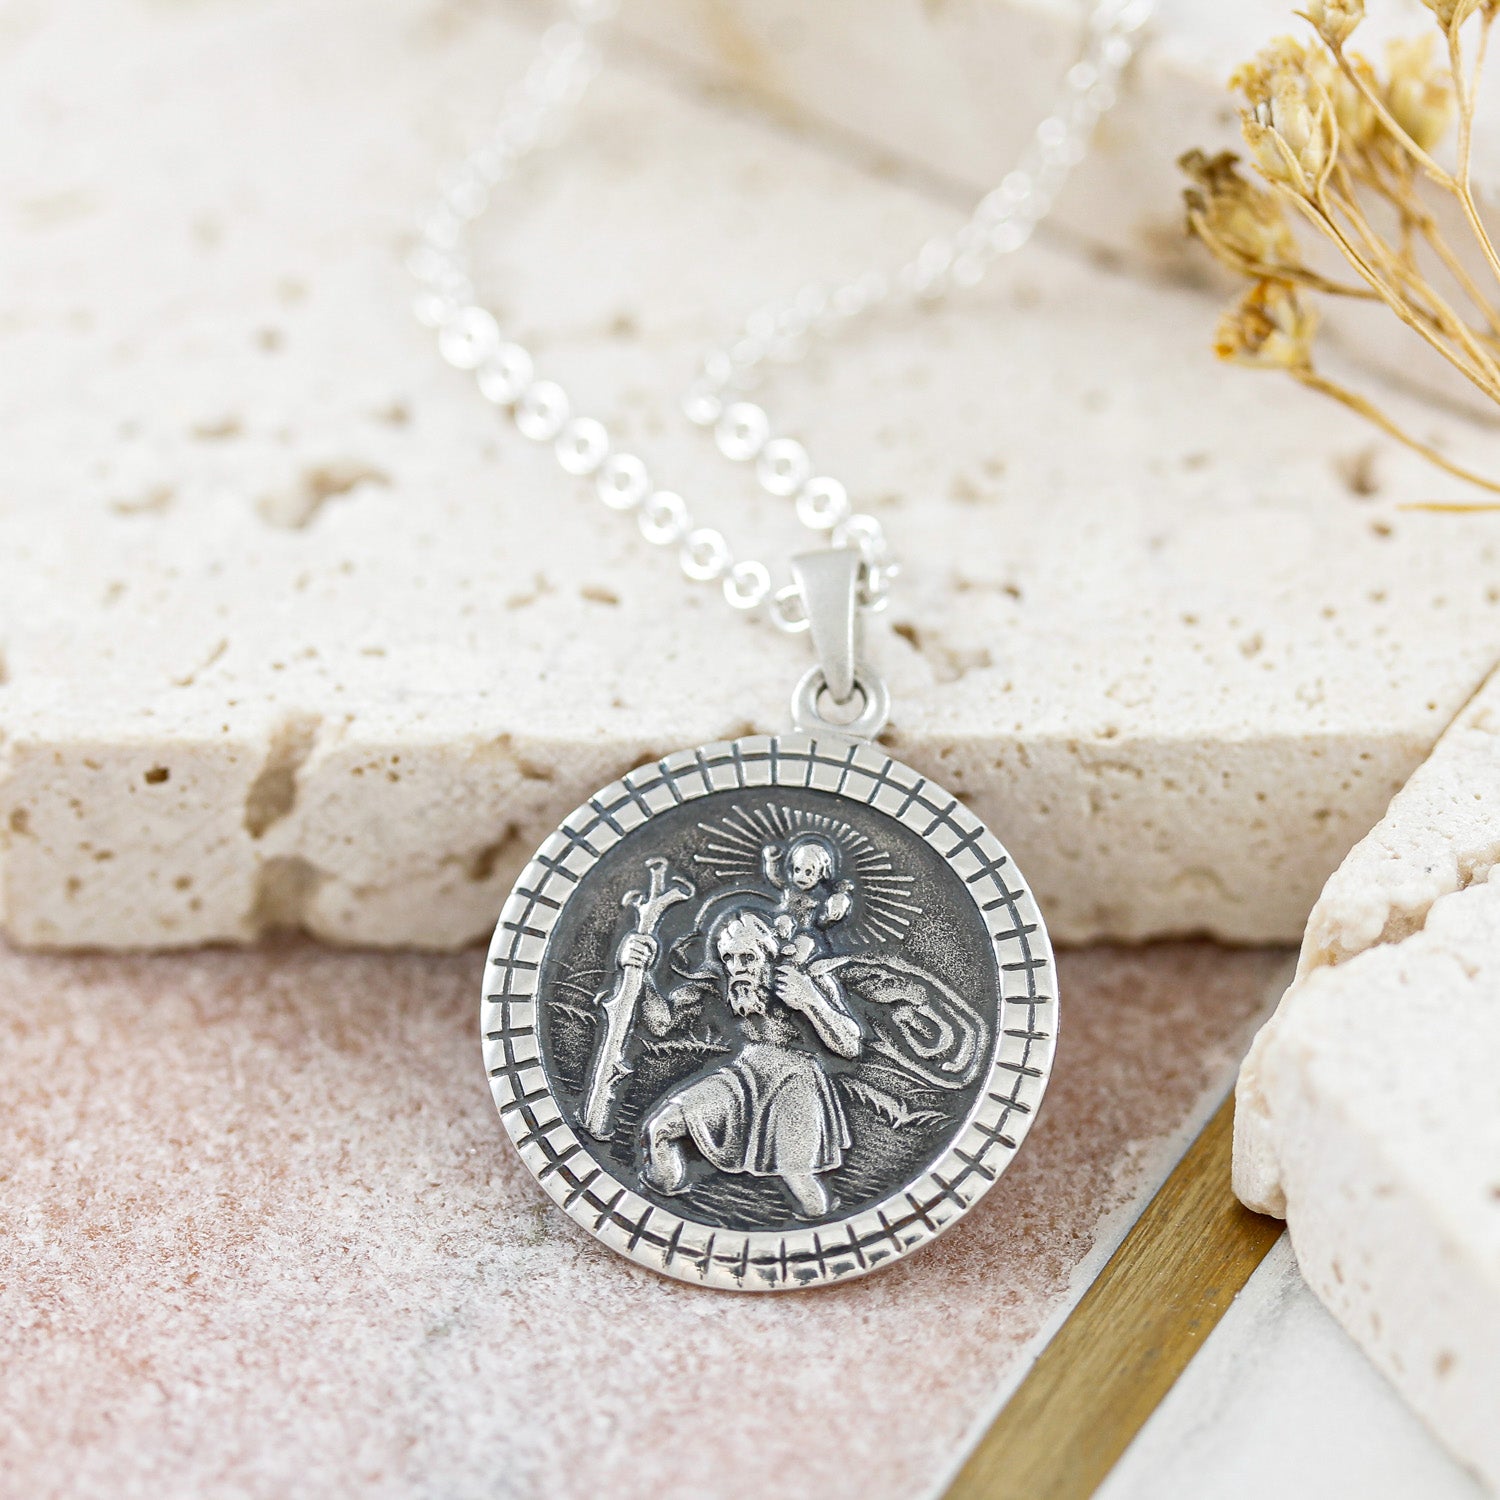 silver cast mosaic border Saint Christopher necklace